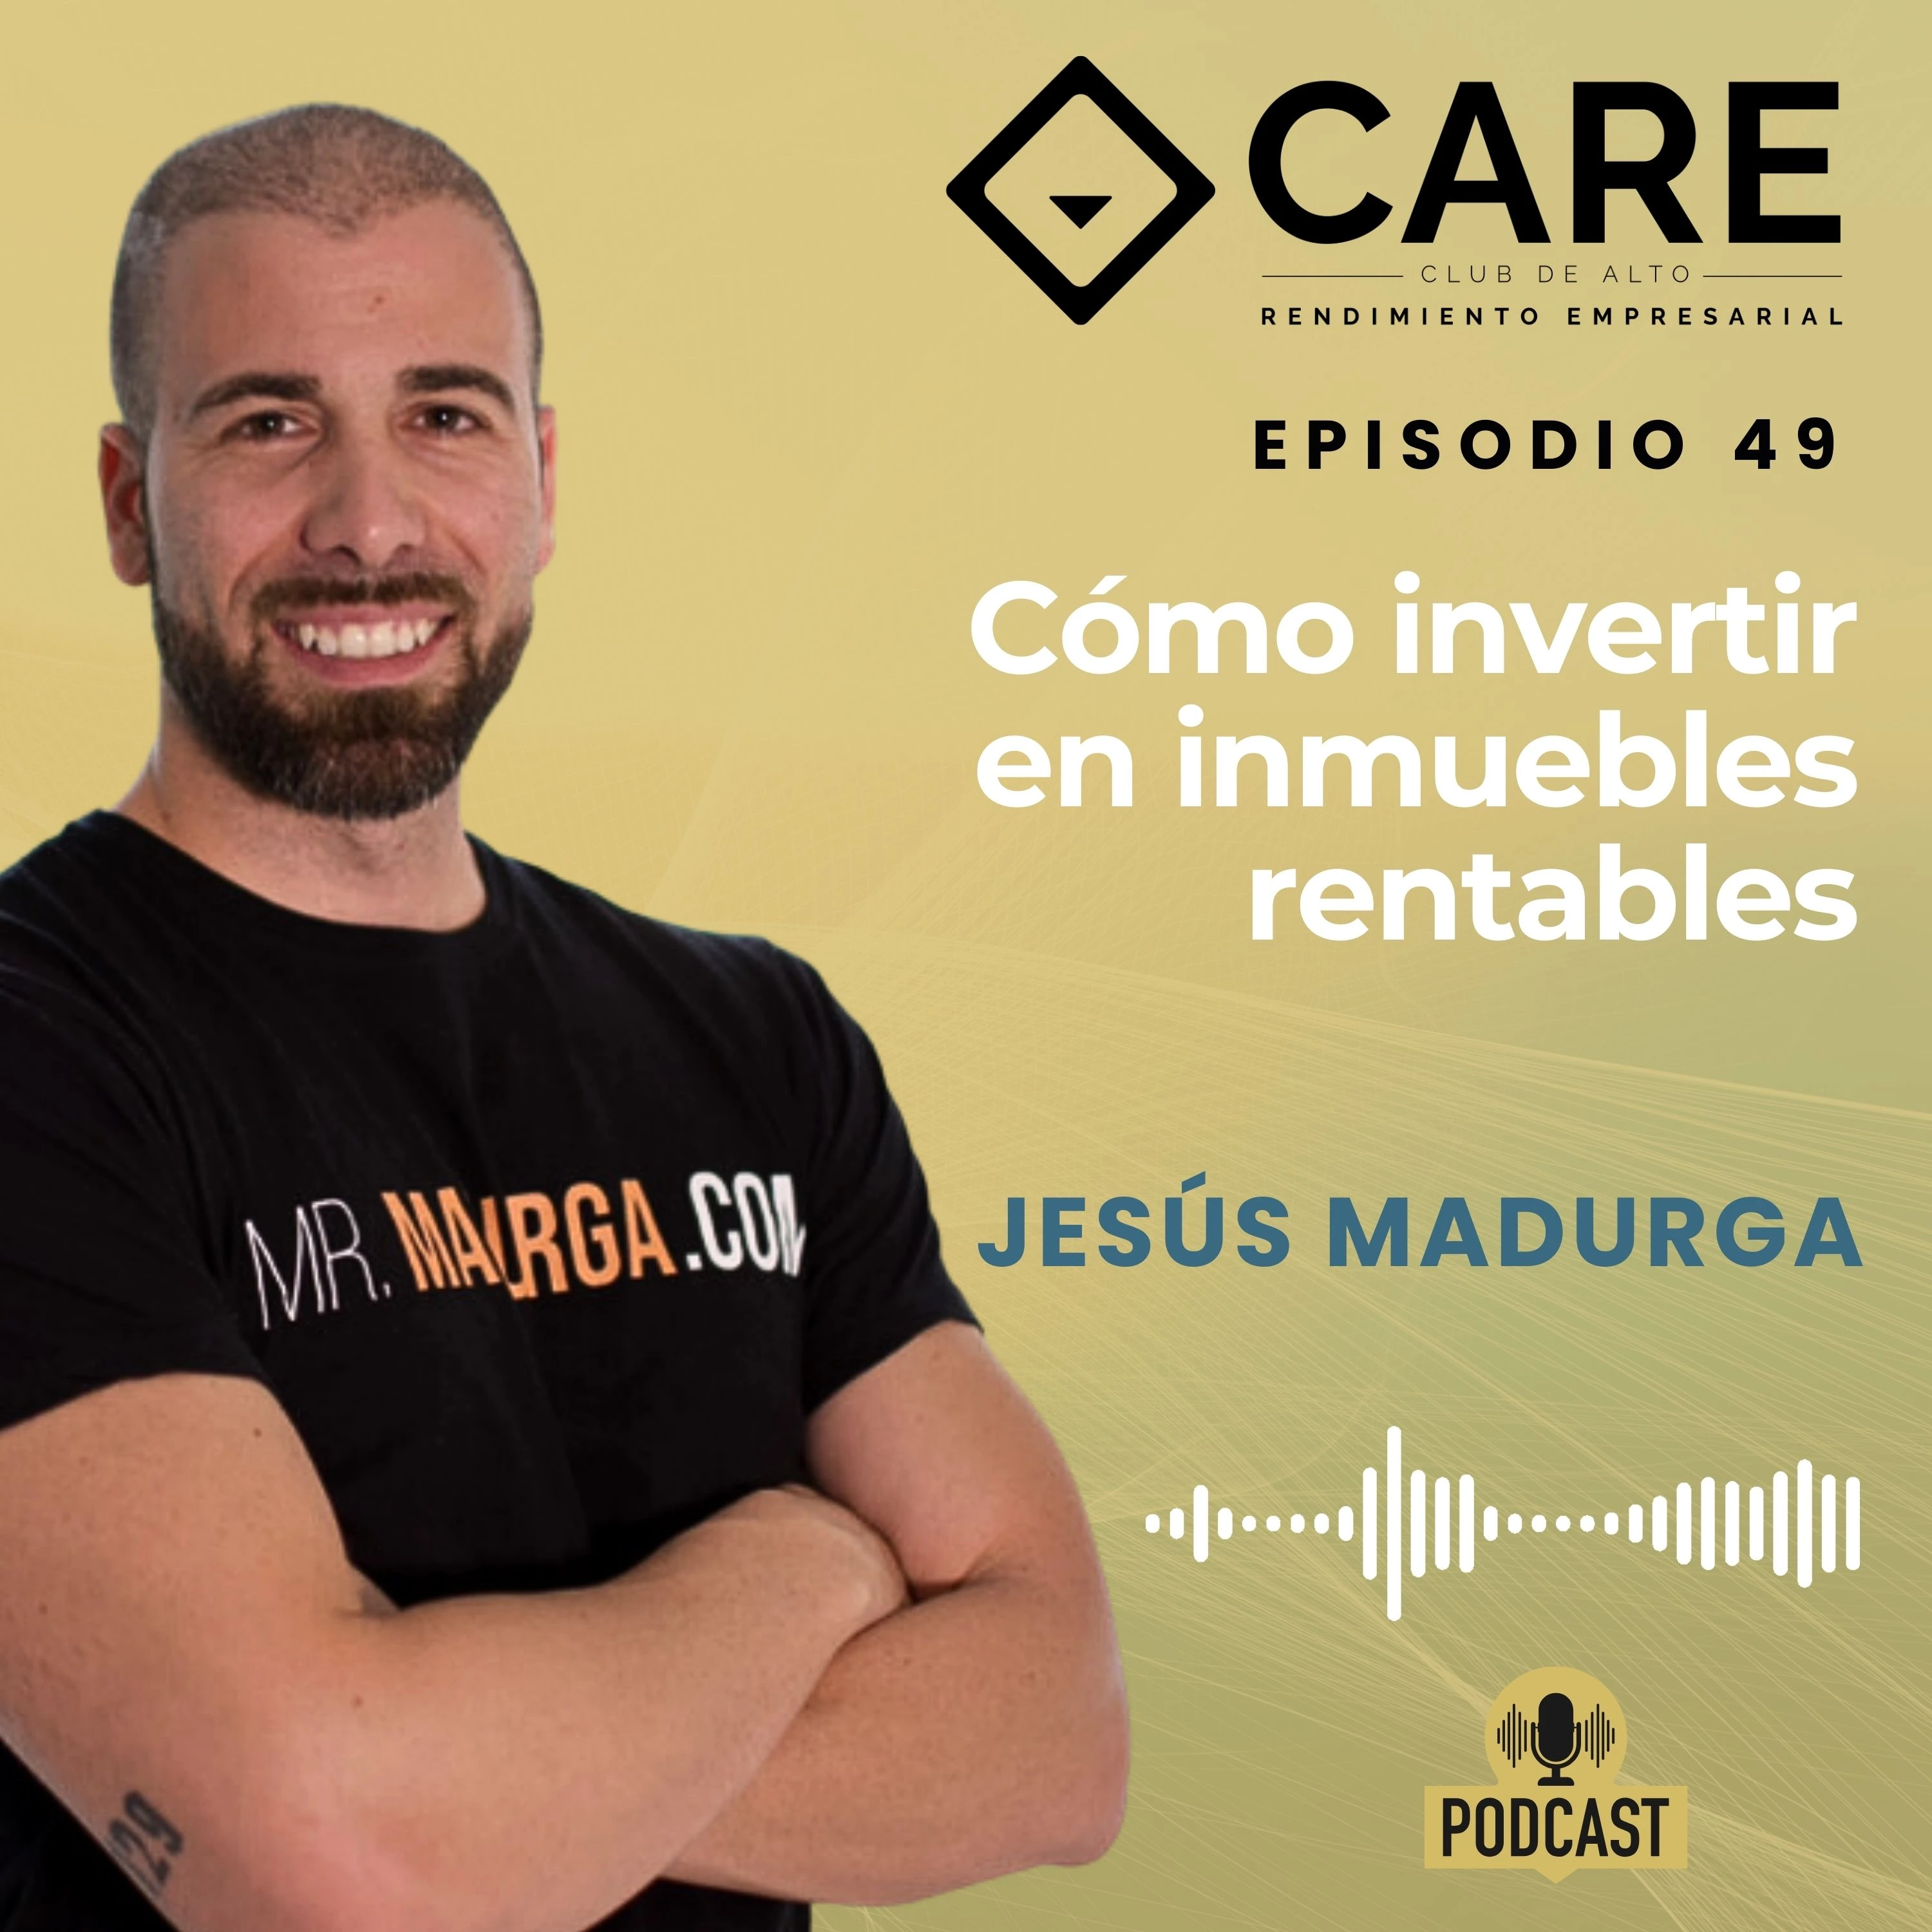 Episodio 49 - Cómo invertir en inmuebles rentables, con Jesús Madurga - Club de Alto Rendimiento Empresarial